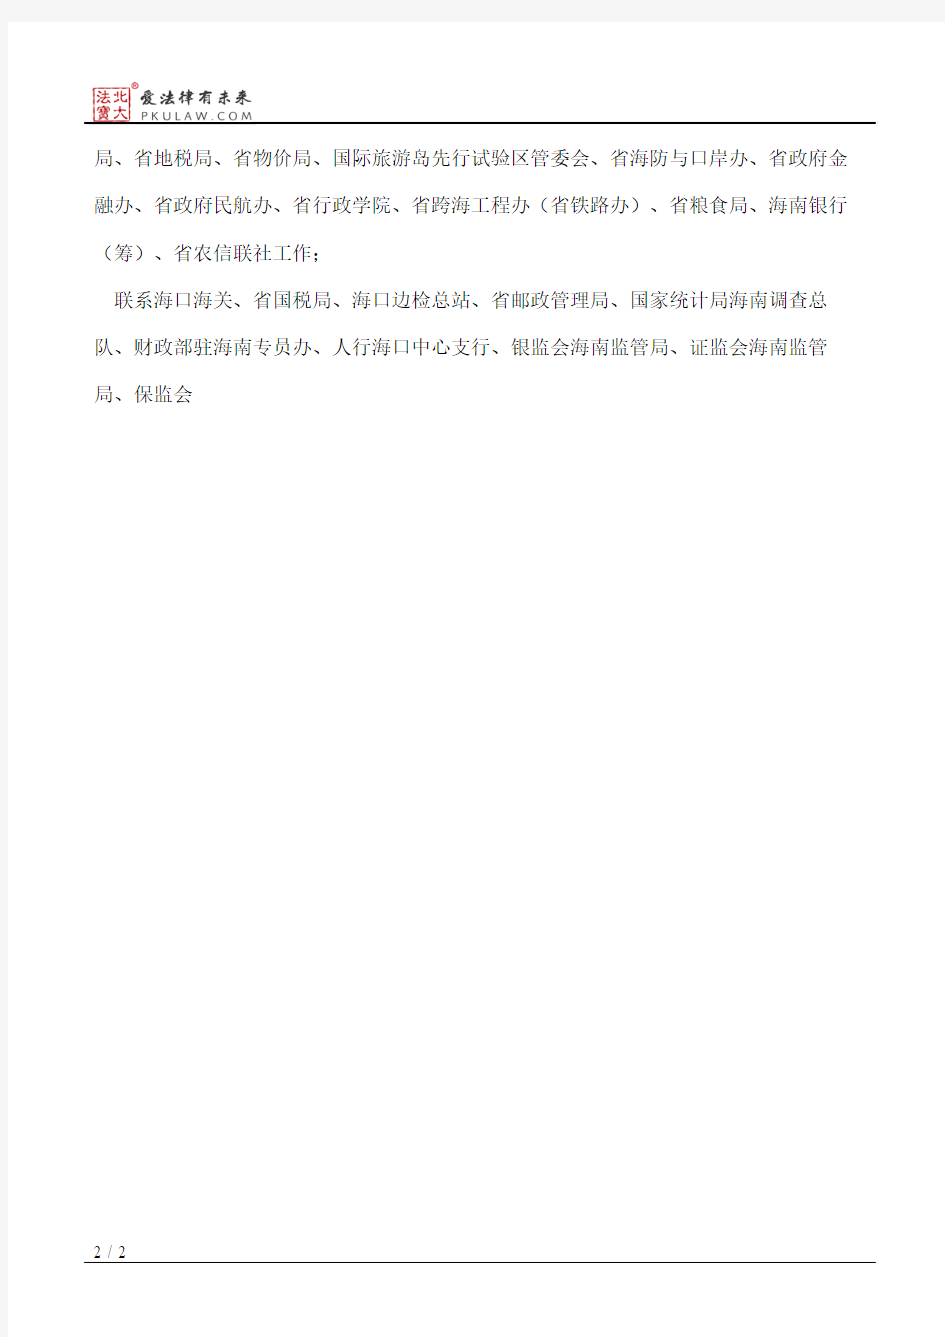 海南省人民政府办公厅关于省政府领导分工的通知(2013)